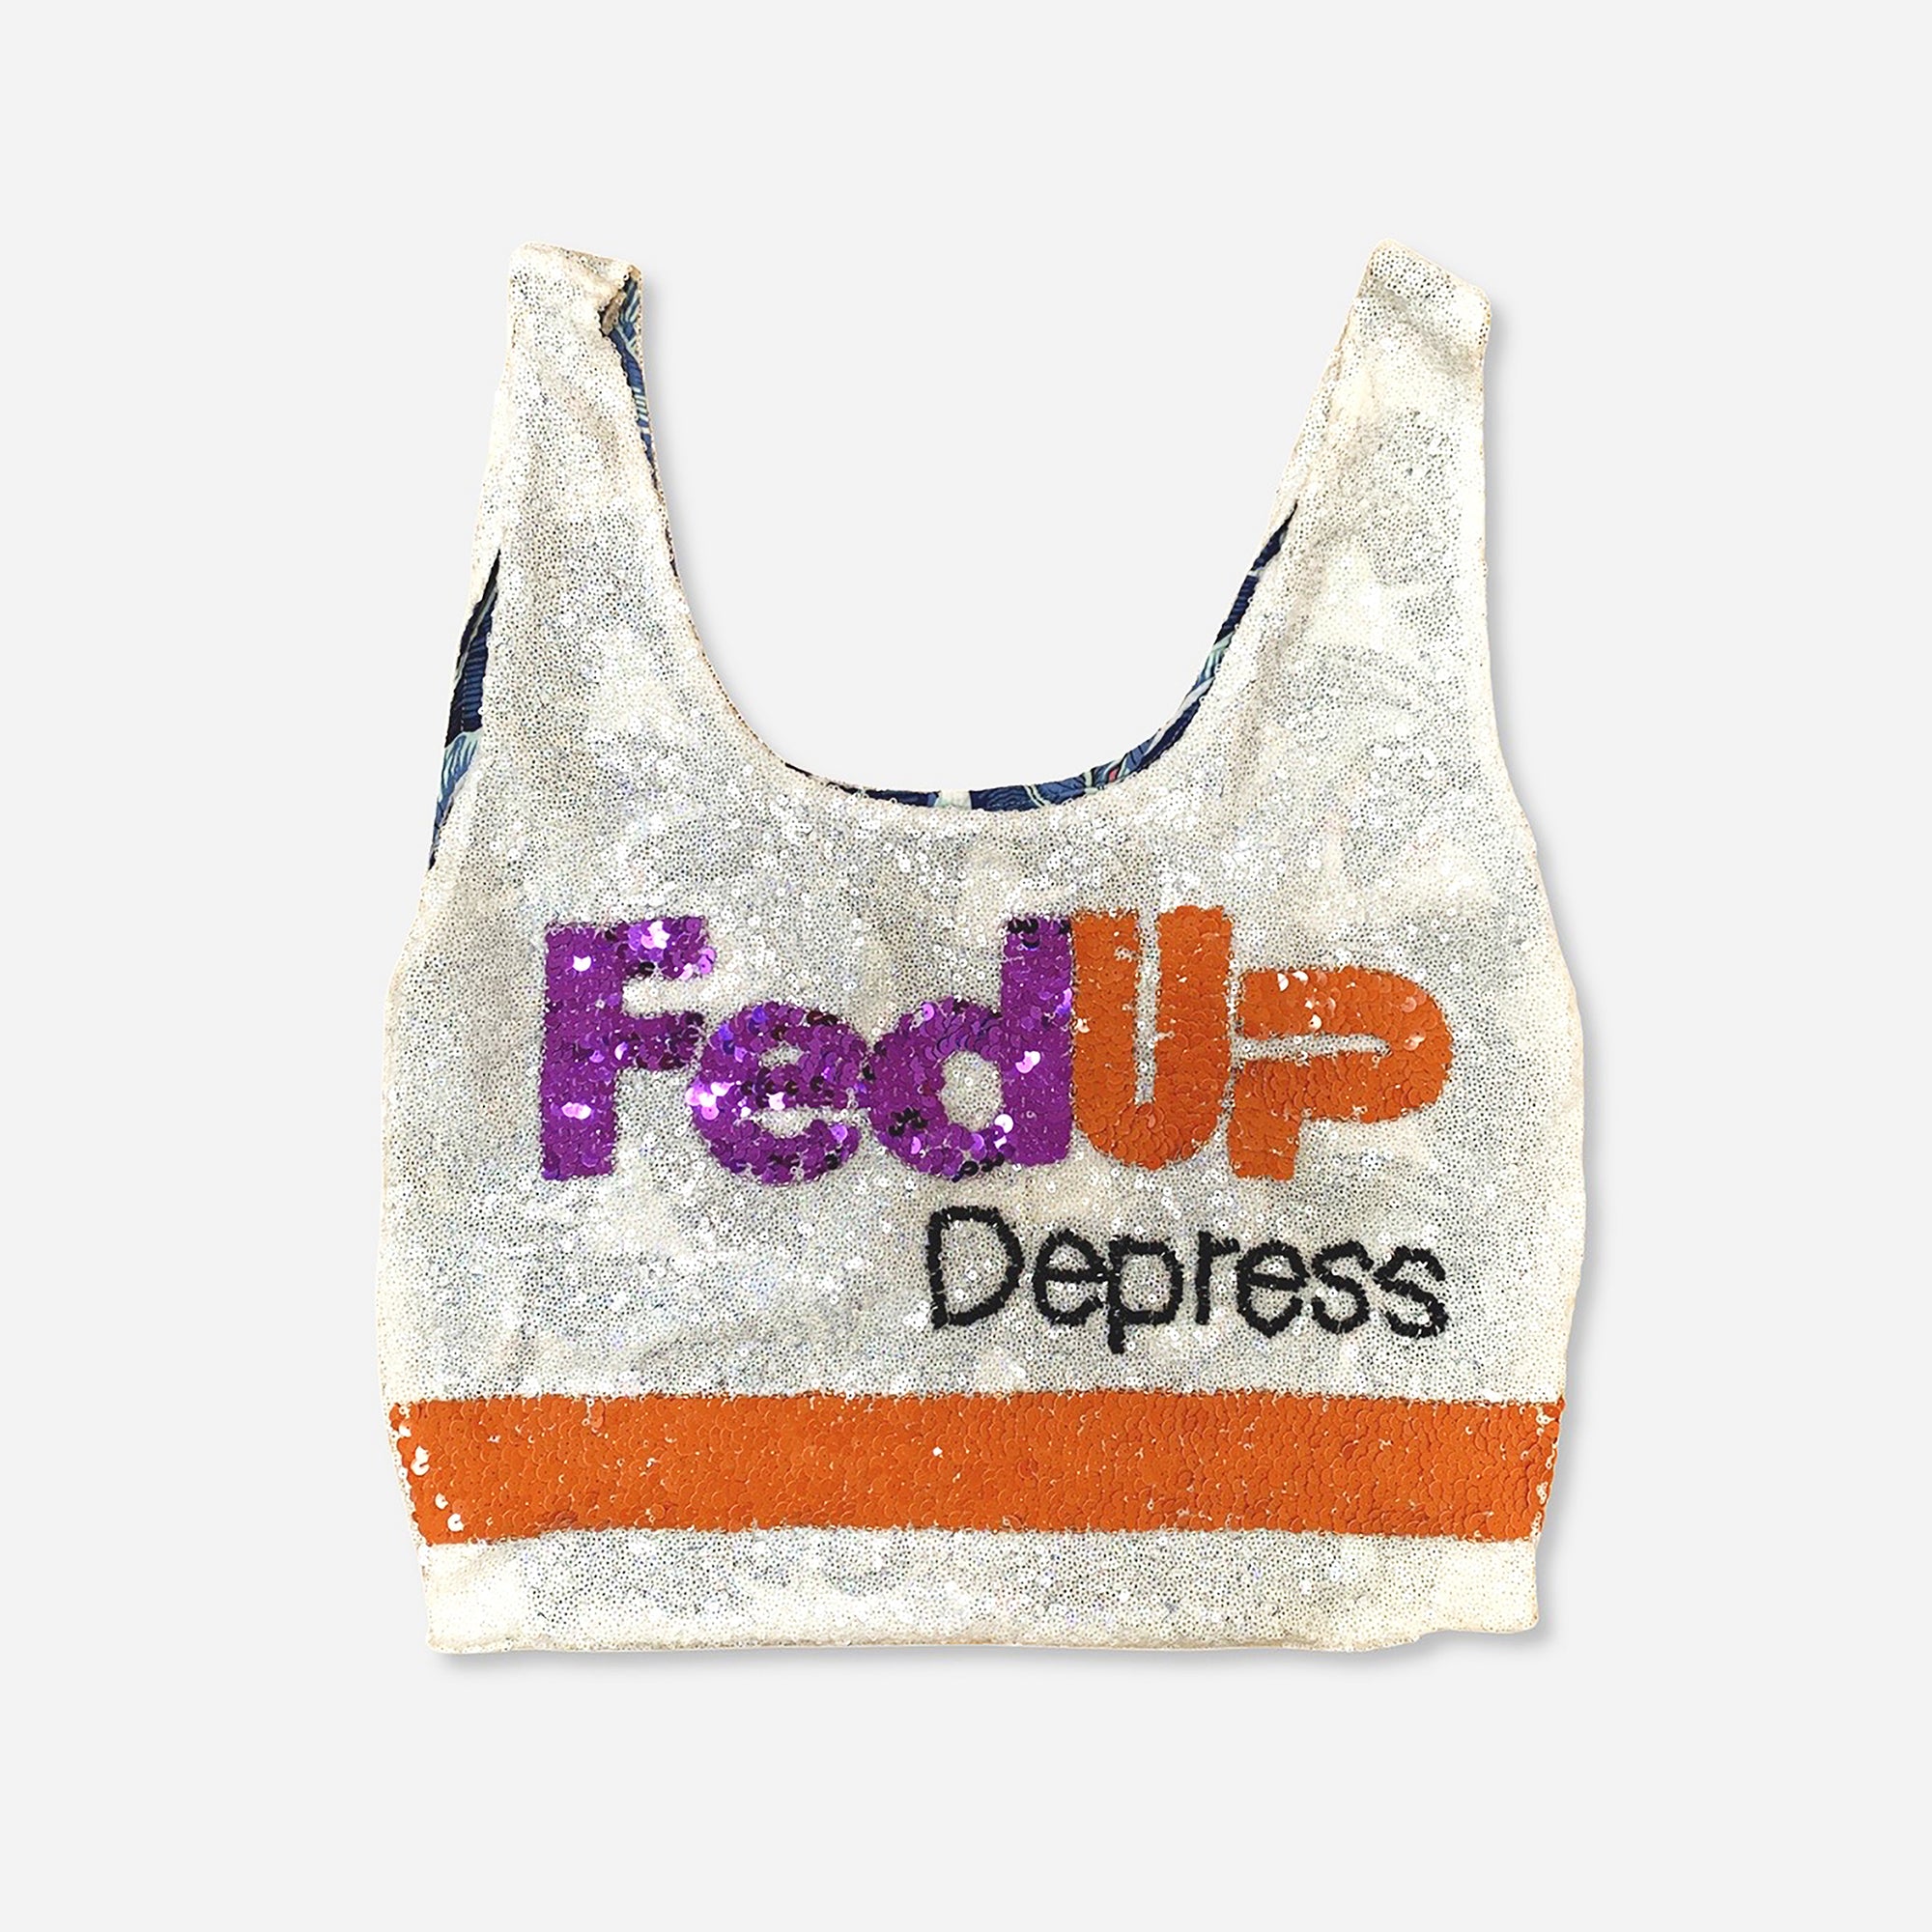 Sequin Supermarket Bag " FedUp Depress " - Pre Order